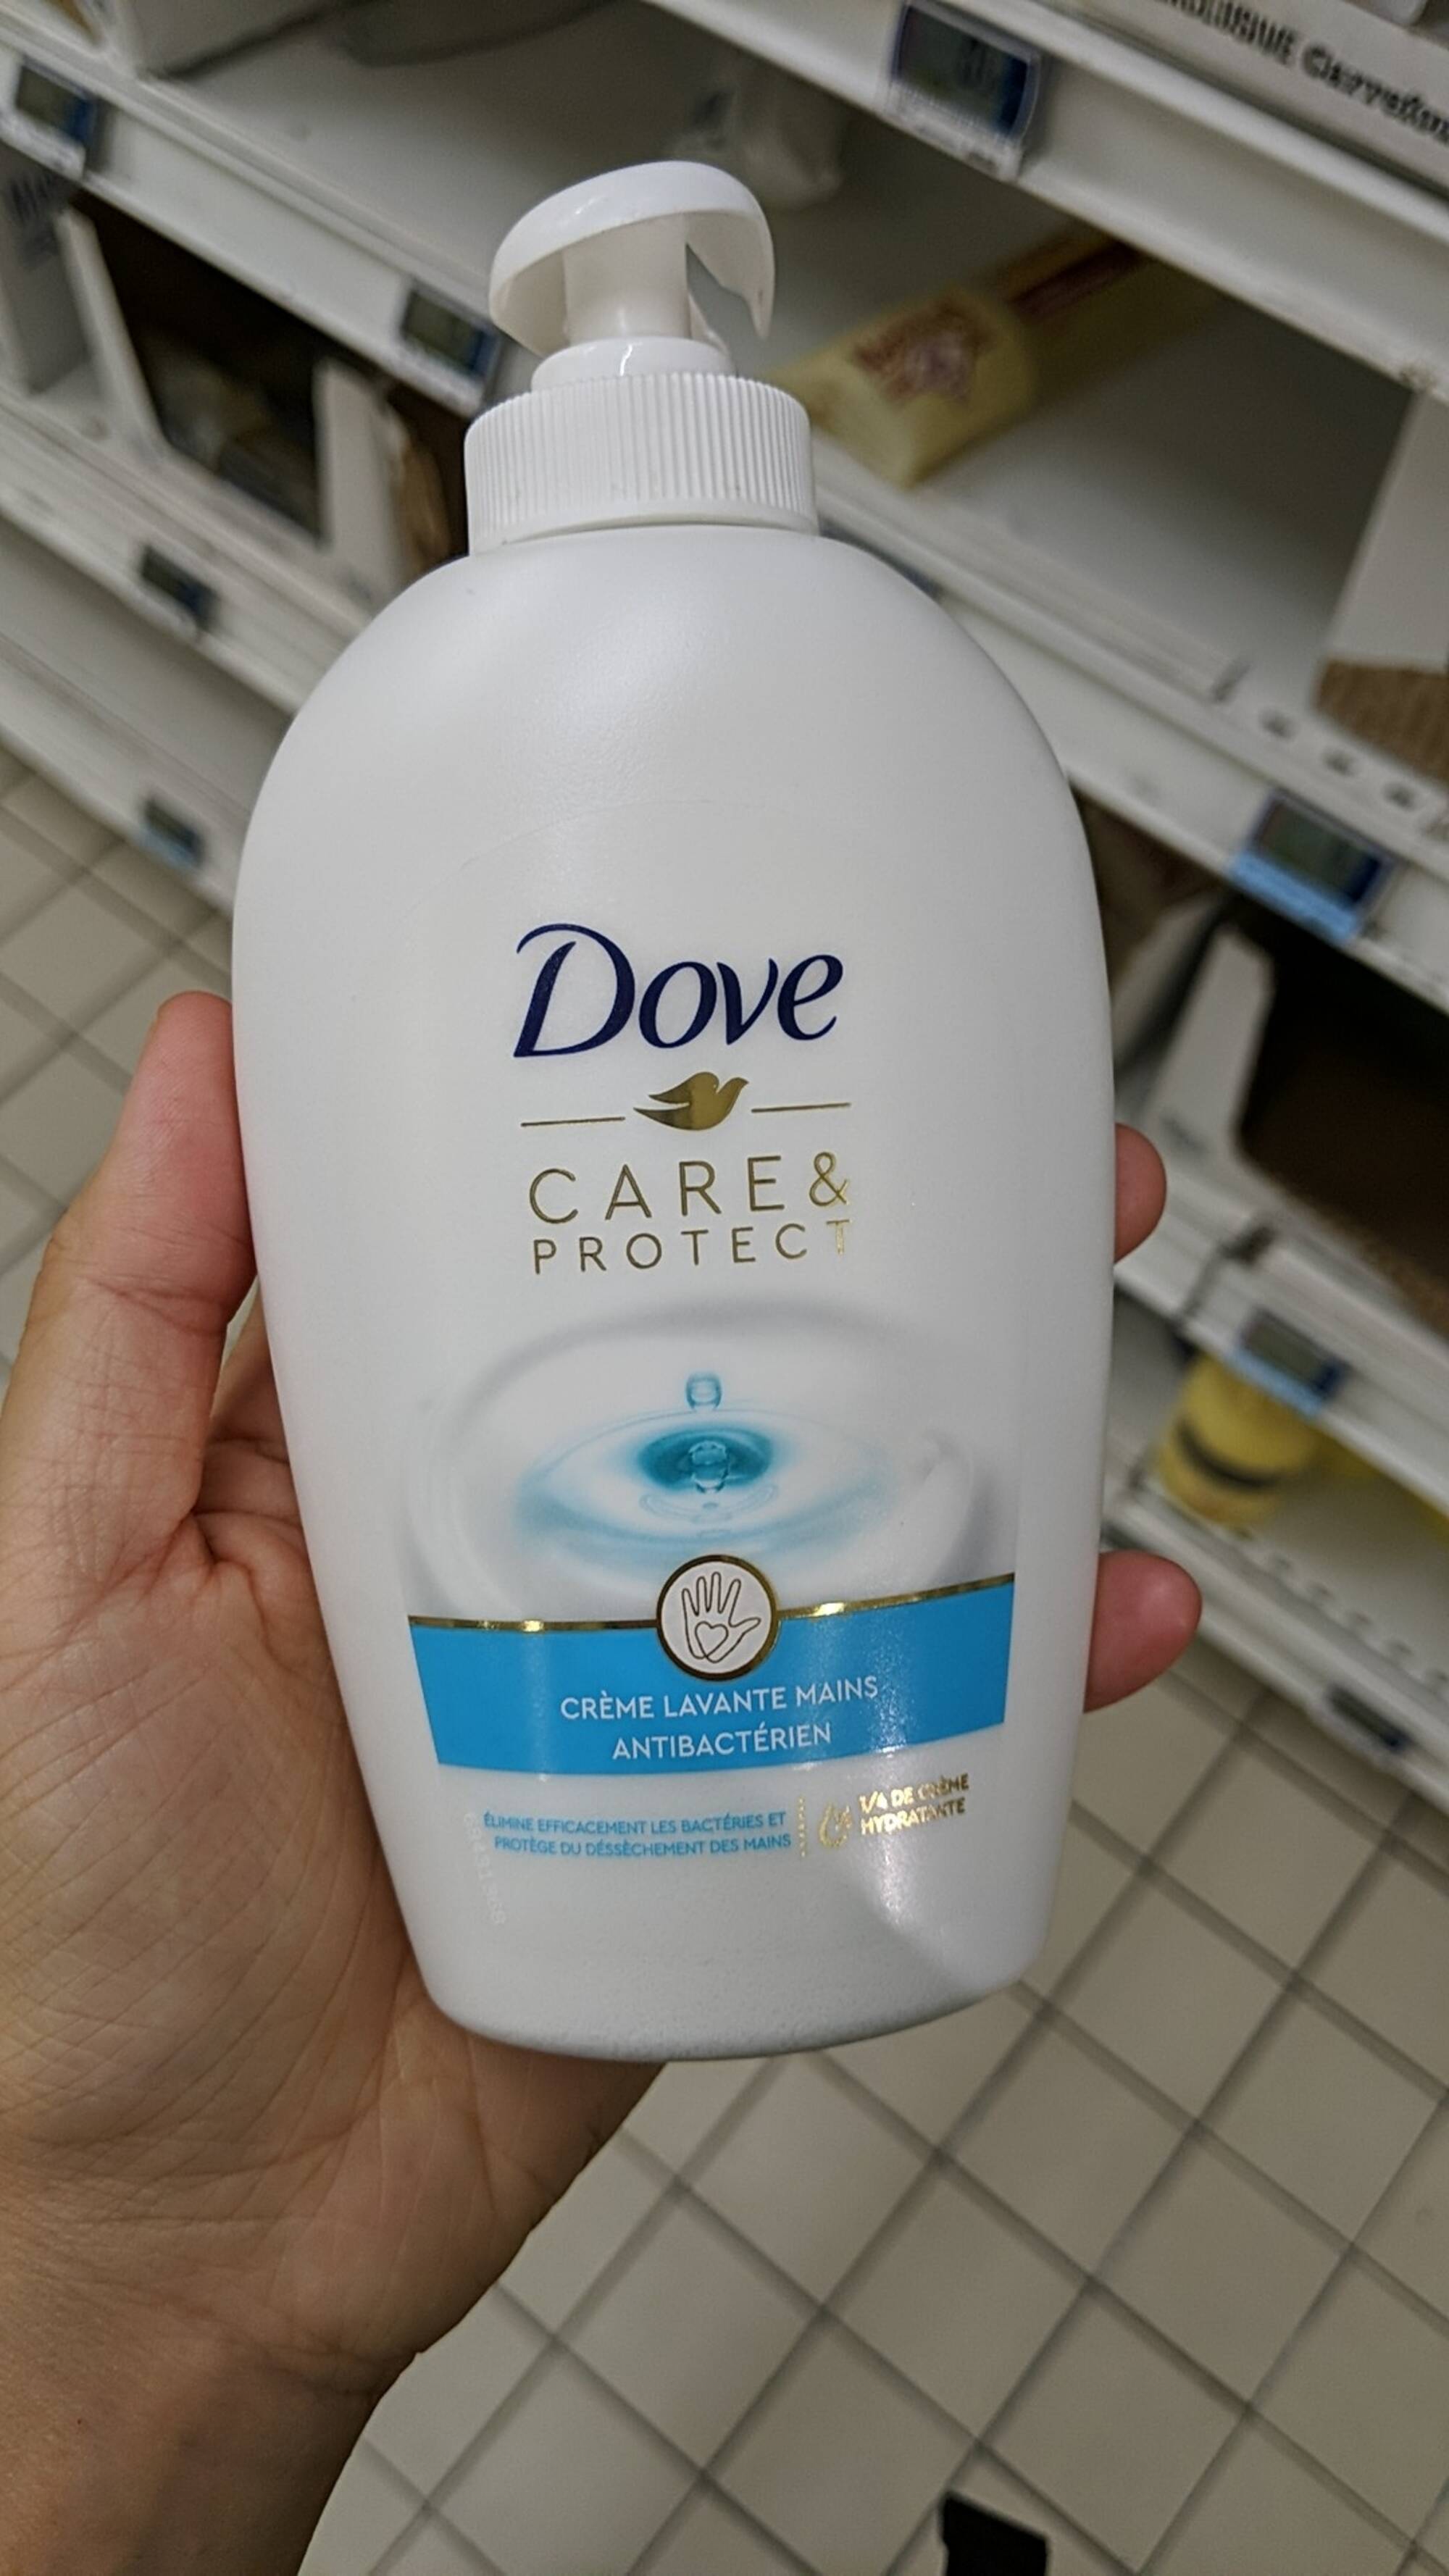 DOVE - Care & Protect - Crème lavante mains